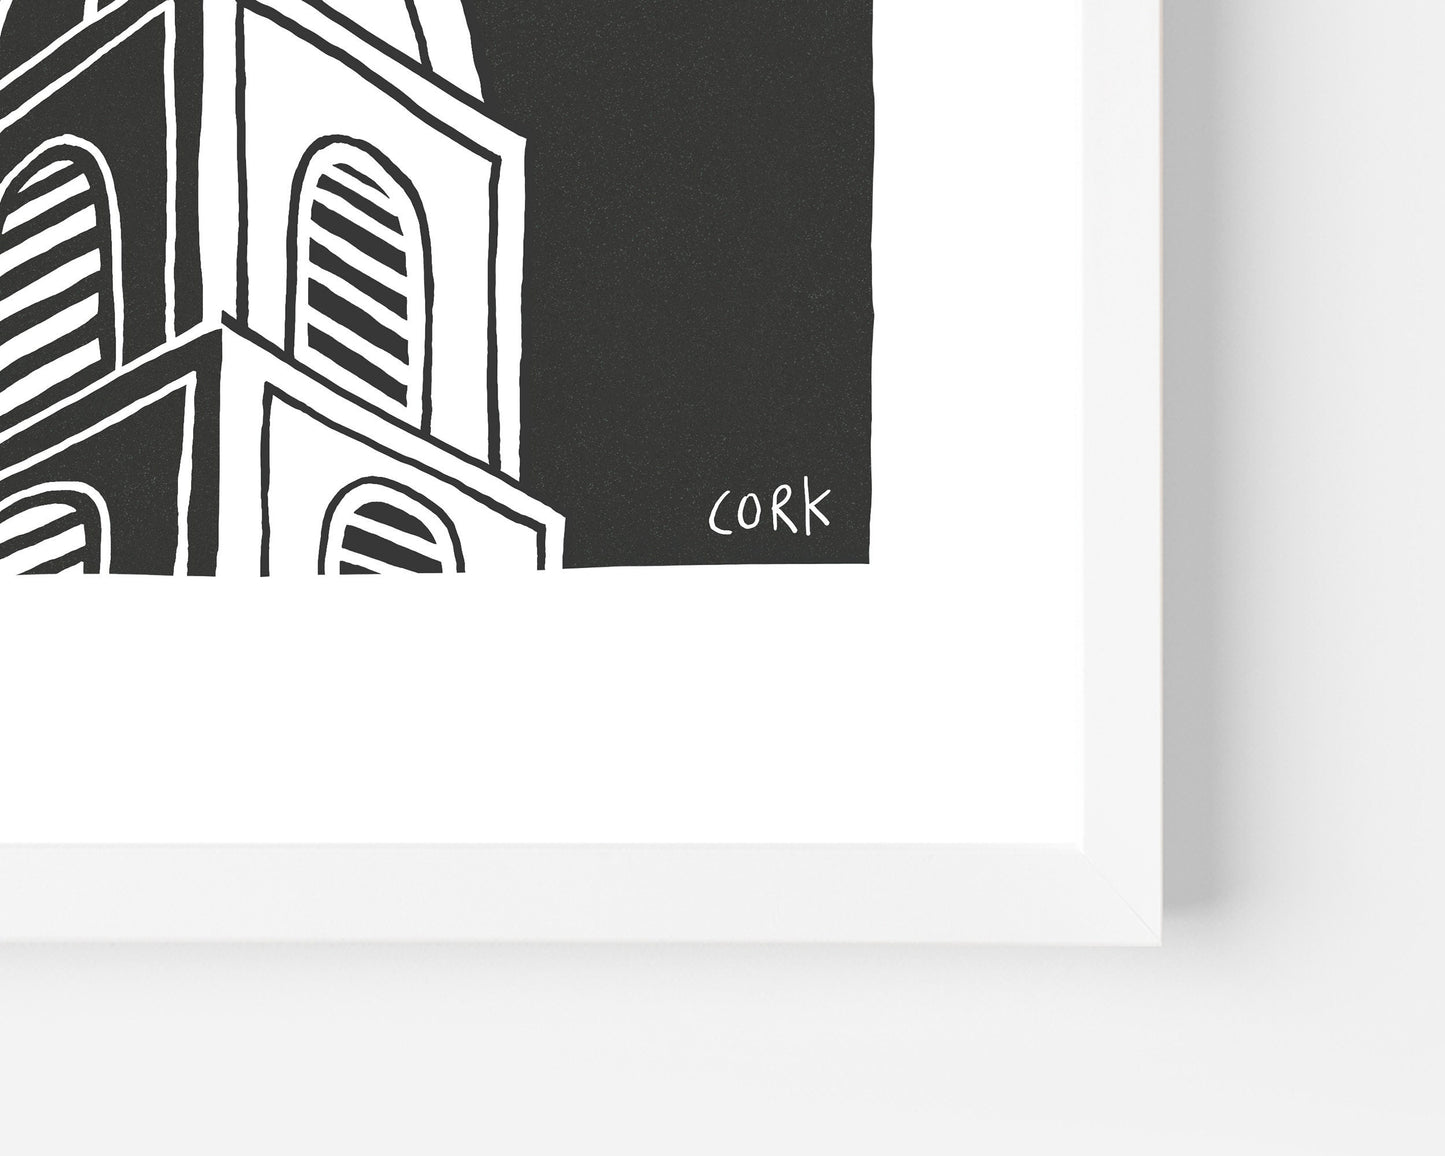 CORK, Ireland – A4 / A3 print, Black & White